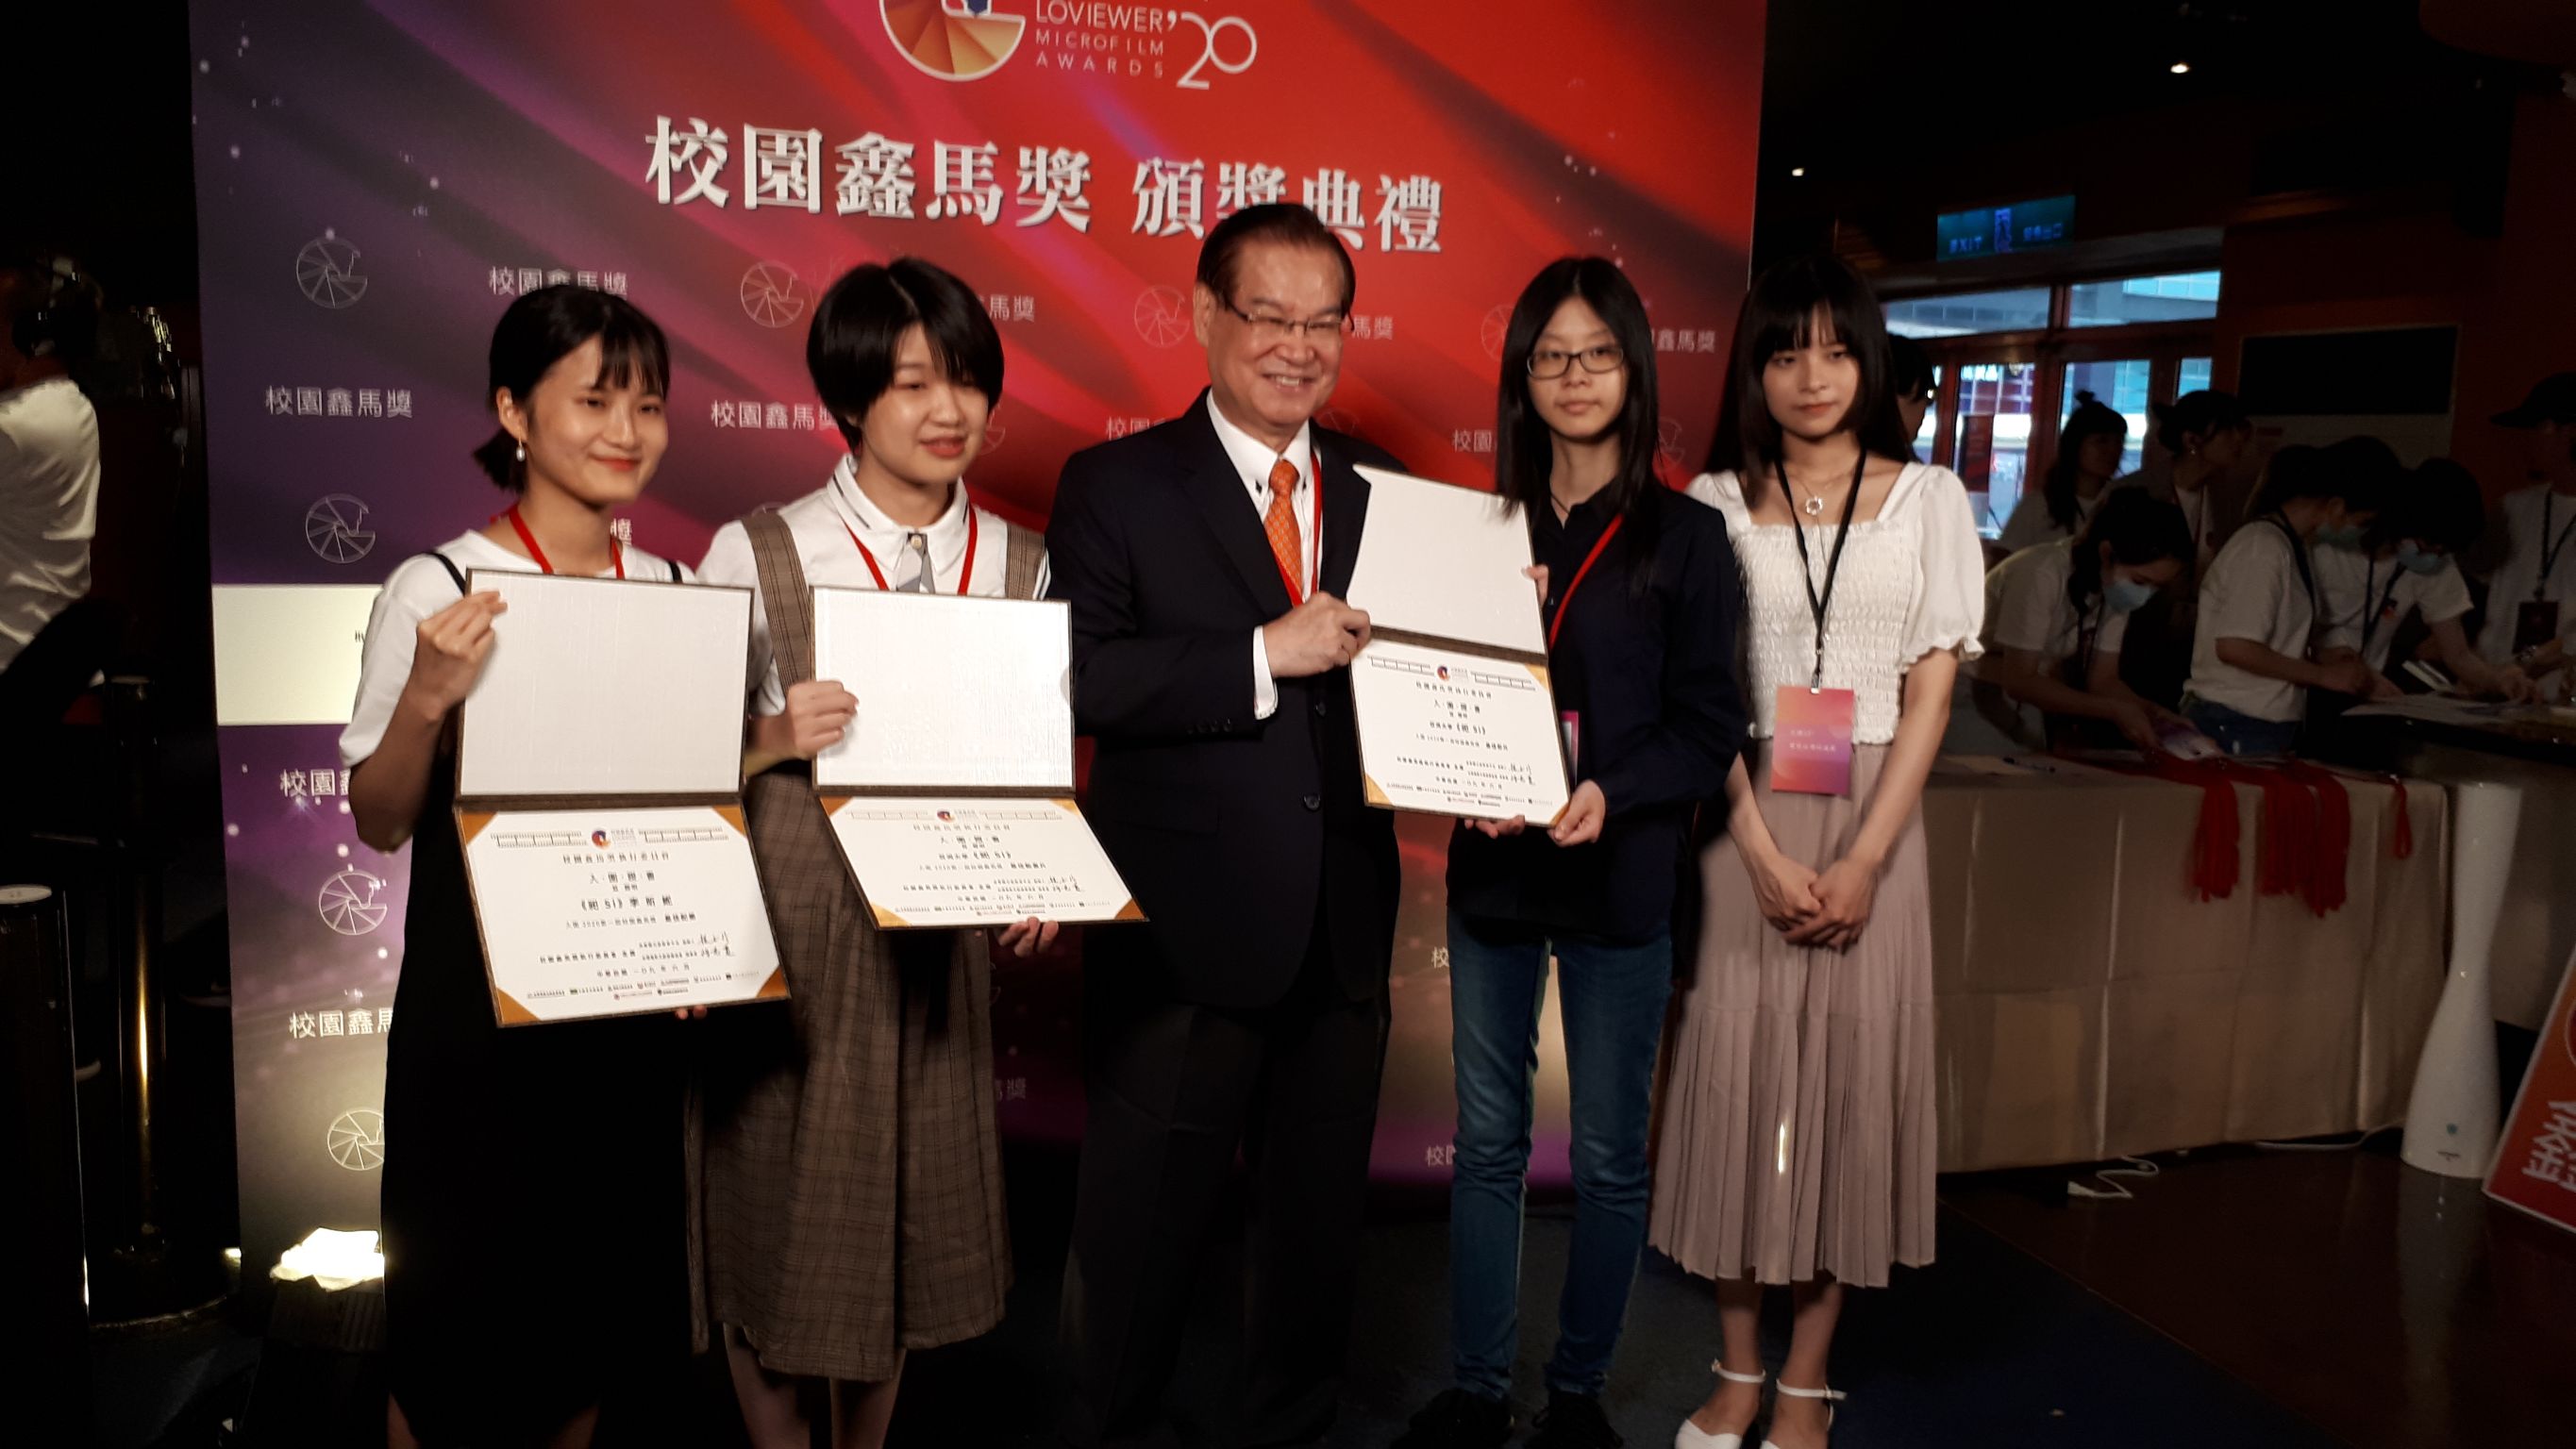 亞洲大學數媒系「格子好短」劇組4位學生製作的《祀Si》畢業專題作品獲獎，上台領獎